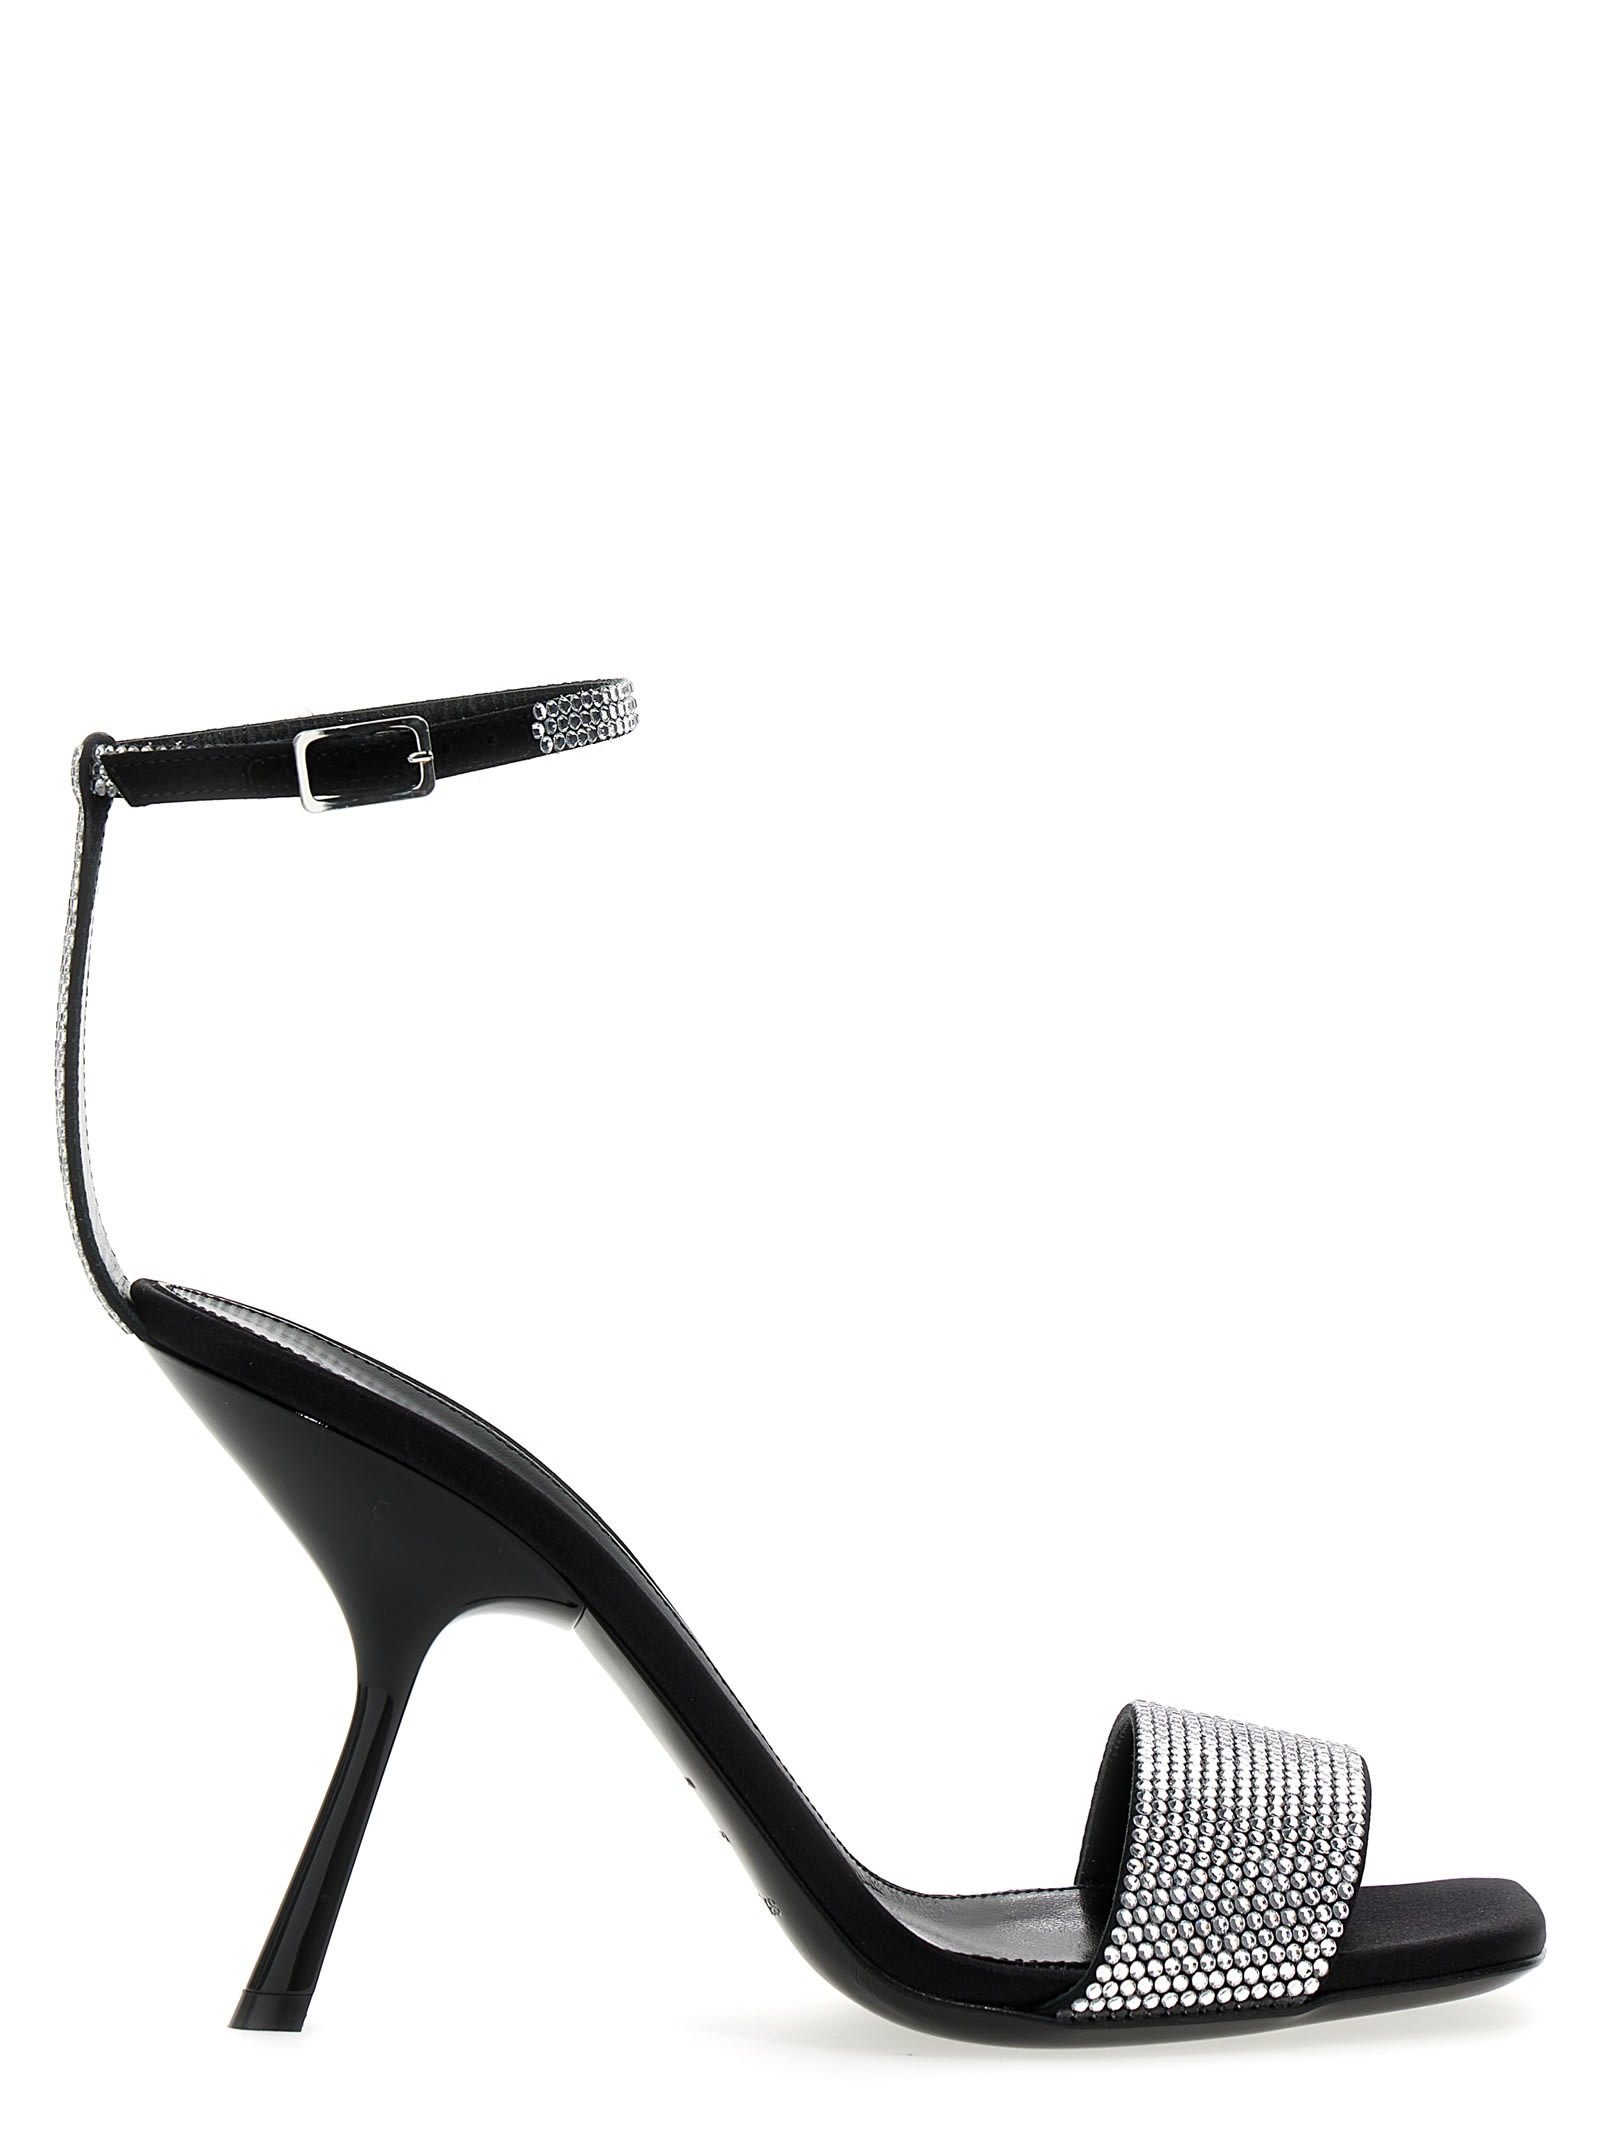 Shop Sergio Rossi Evangelie Sandals By Mr. Patentie Rossi X Evangelie Smyrniotaki In Black